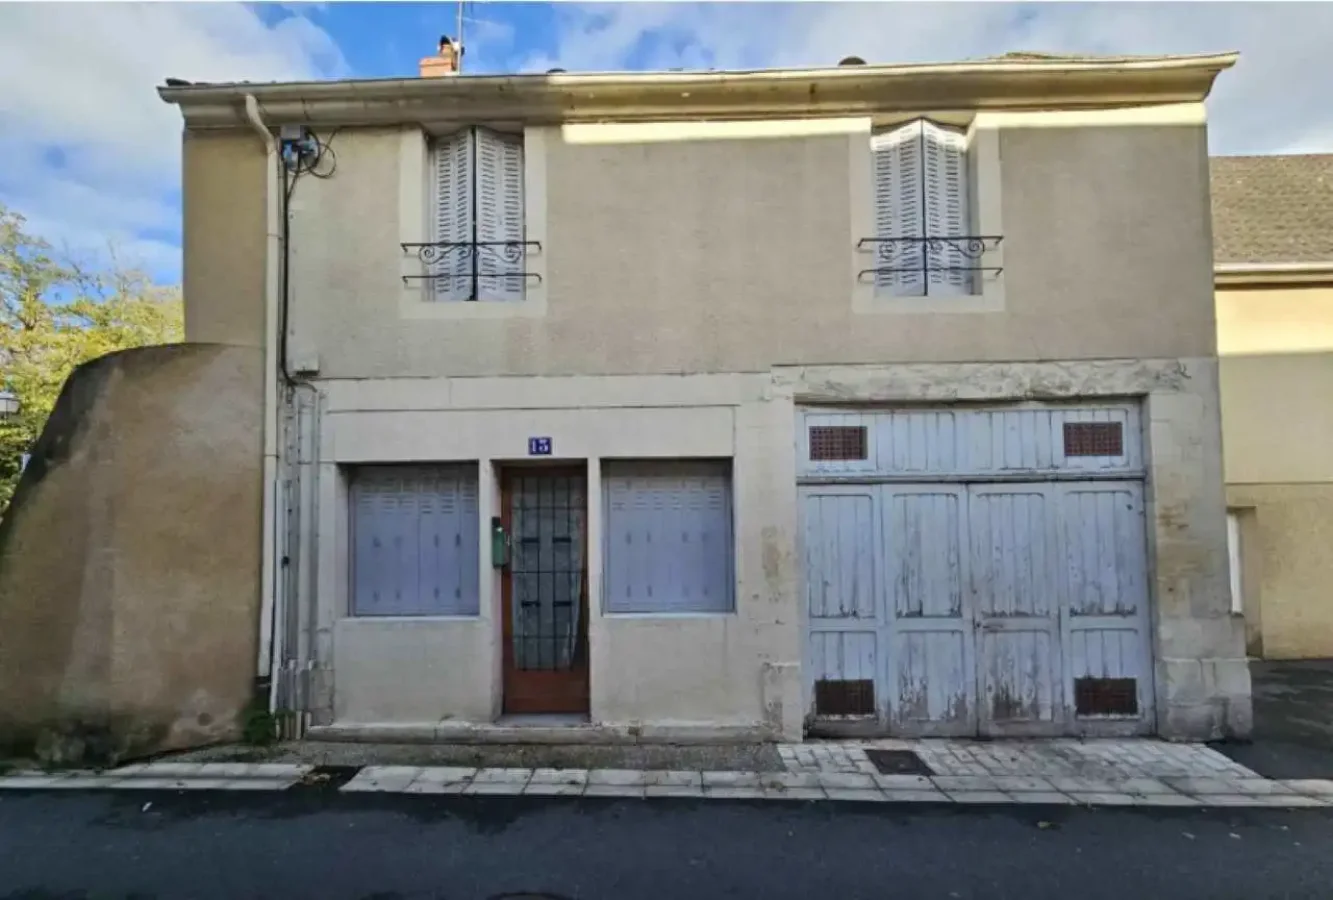 Fransa'daki Saint-Amand-Montrond Kasabası, 1 Euroya Ev Satıyor: İşte Detaylar